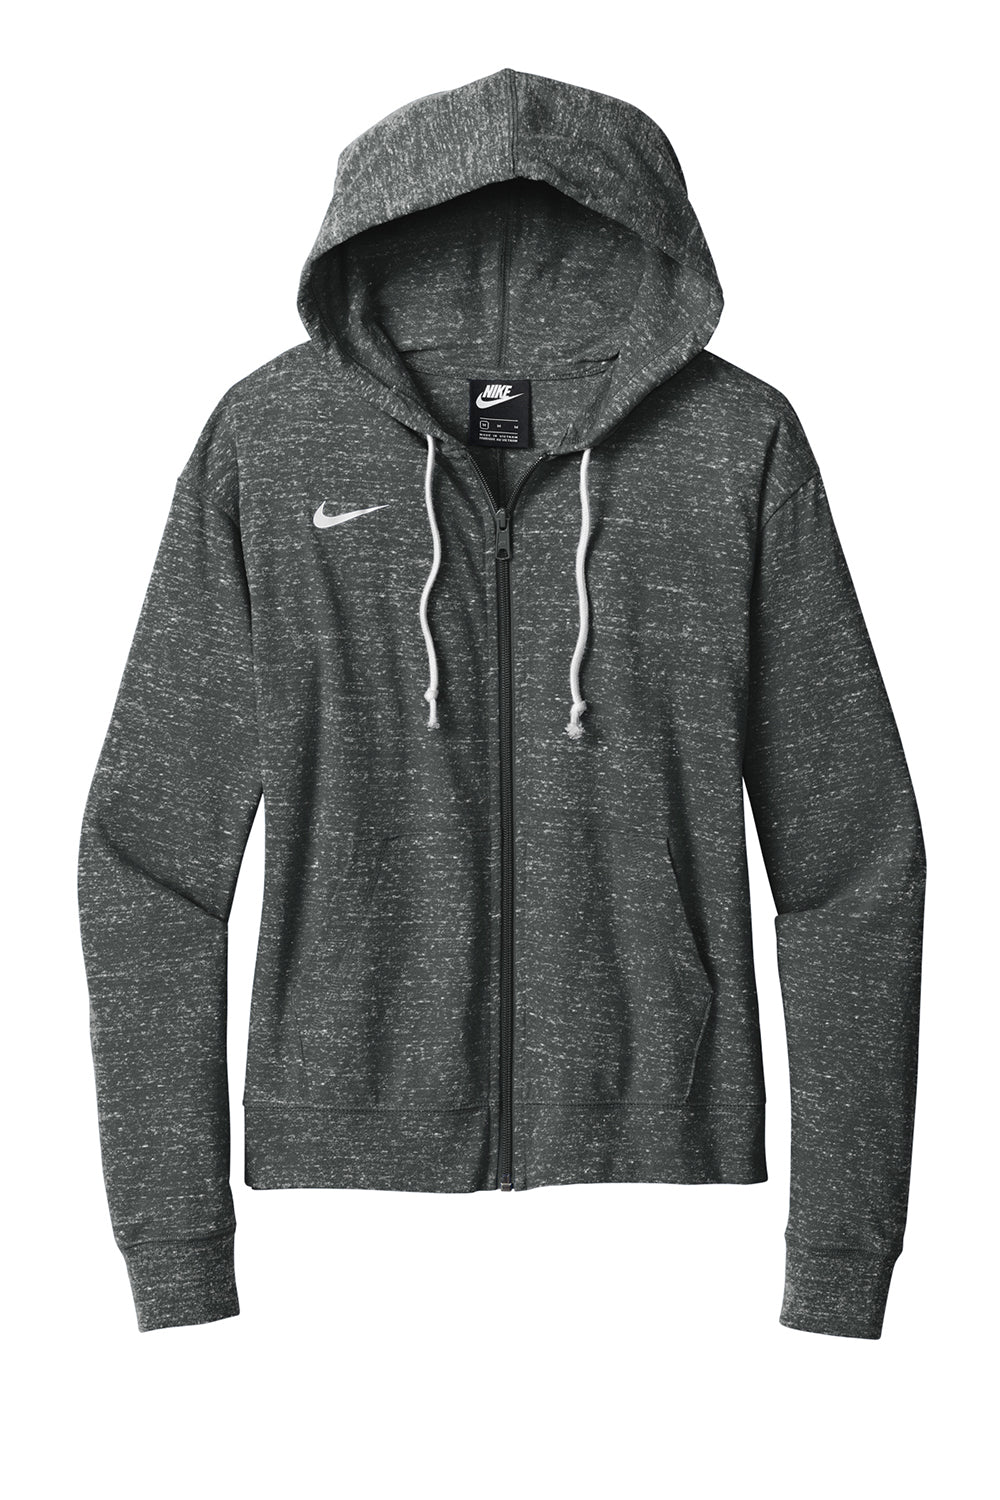 Nike CN9402 Womens Gym Vintage Full Zip Hooded Sweatshirt Hoodie Team Anthracite Grey Flat Front